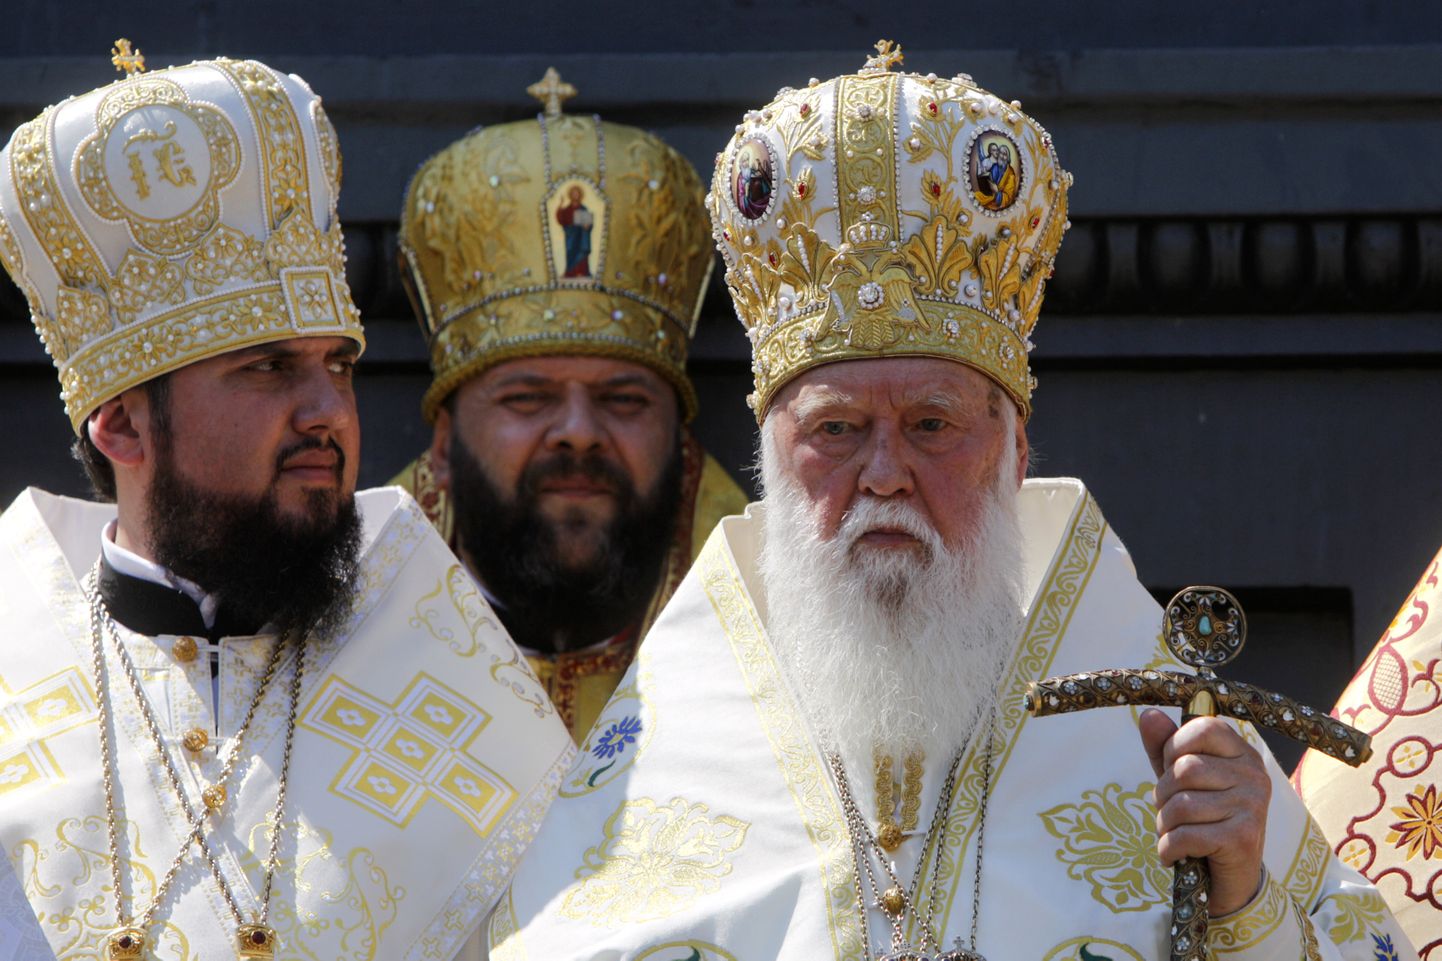 Kiievi Patriarhaadi Ukraina Õigeusu Kiriku patriarh Filaret  (pildil paremal) 2014. aastal Kiievis.